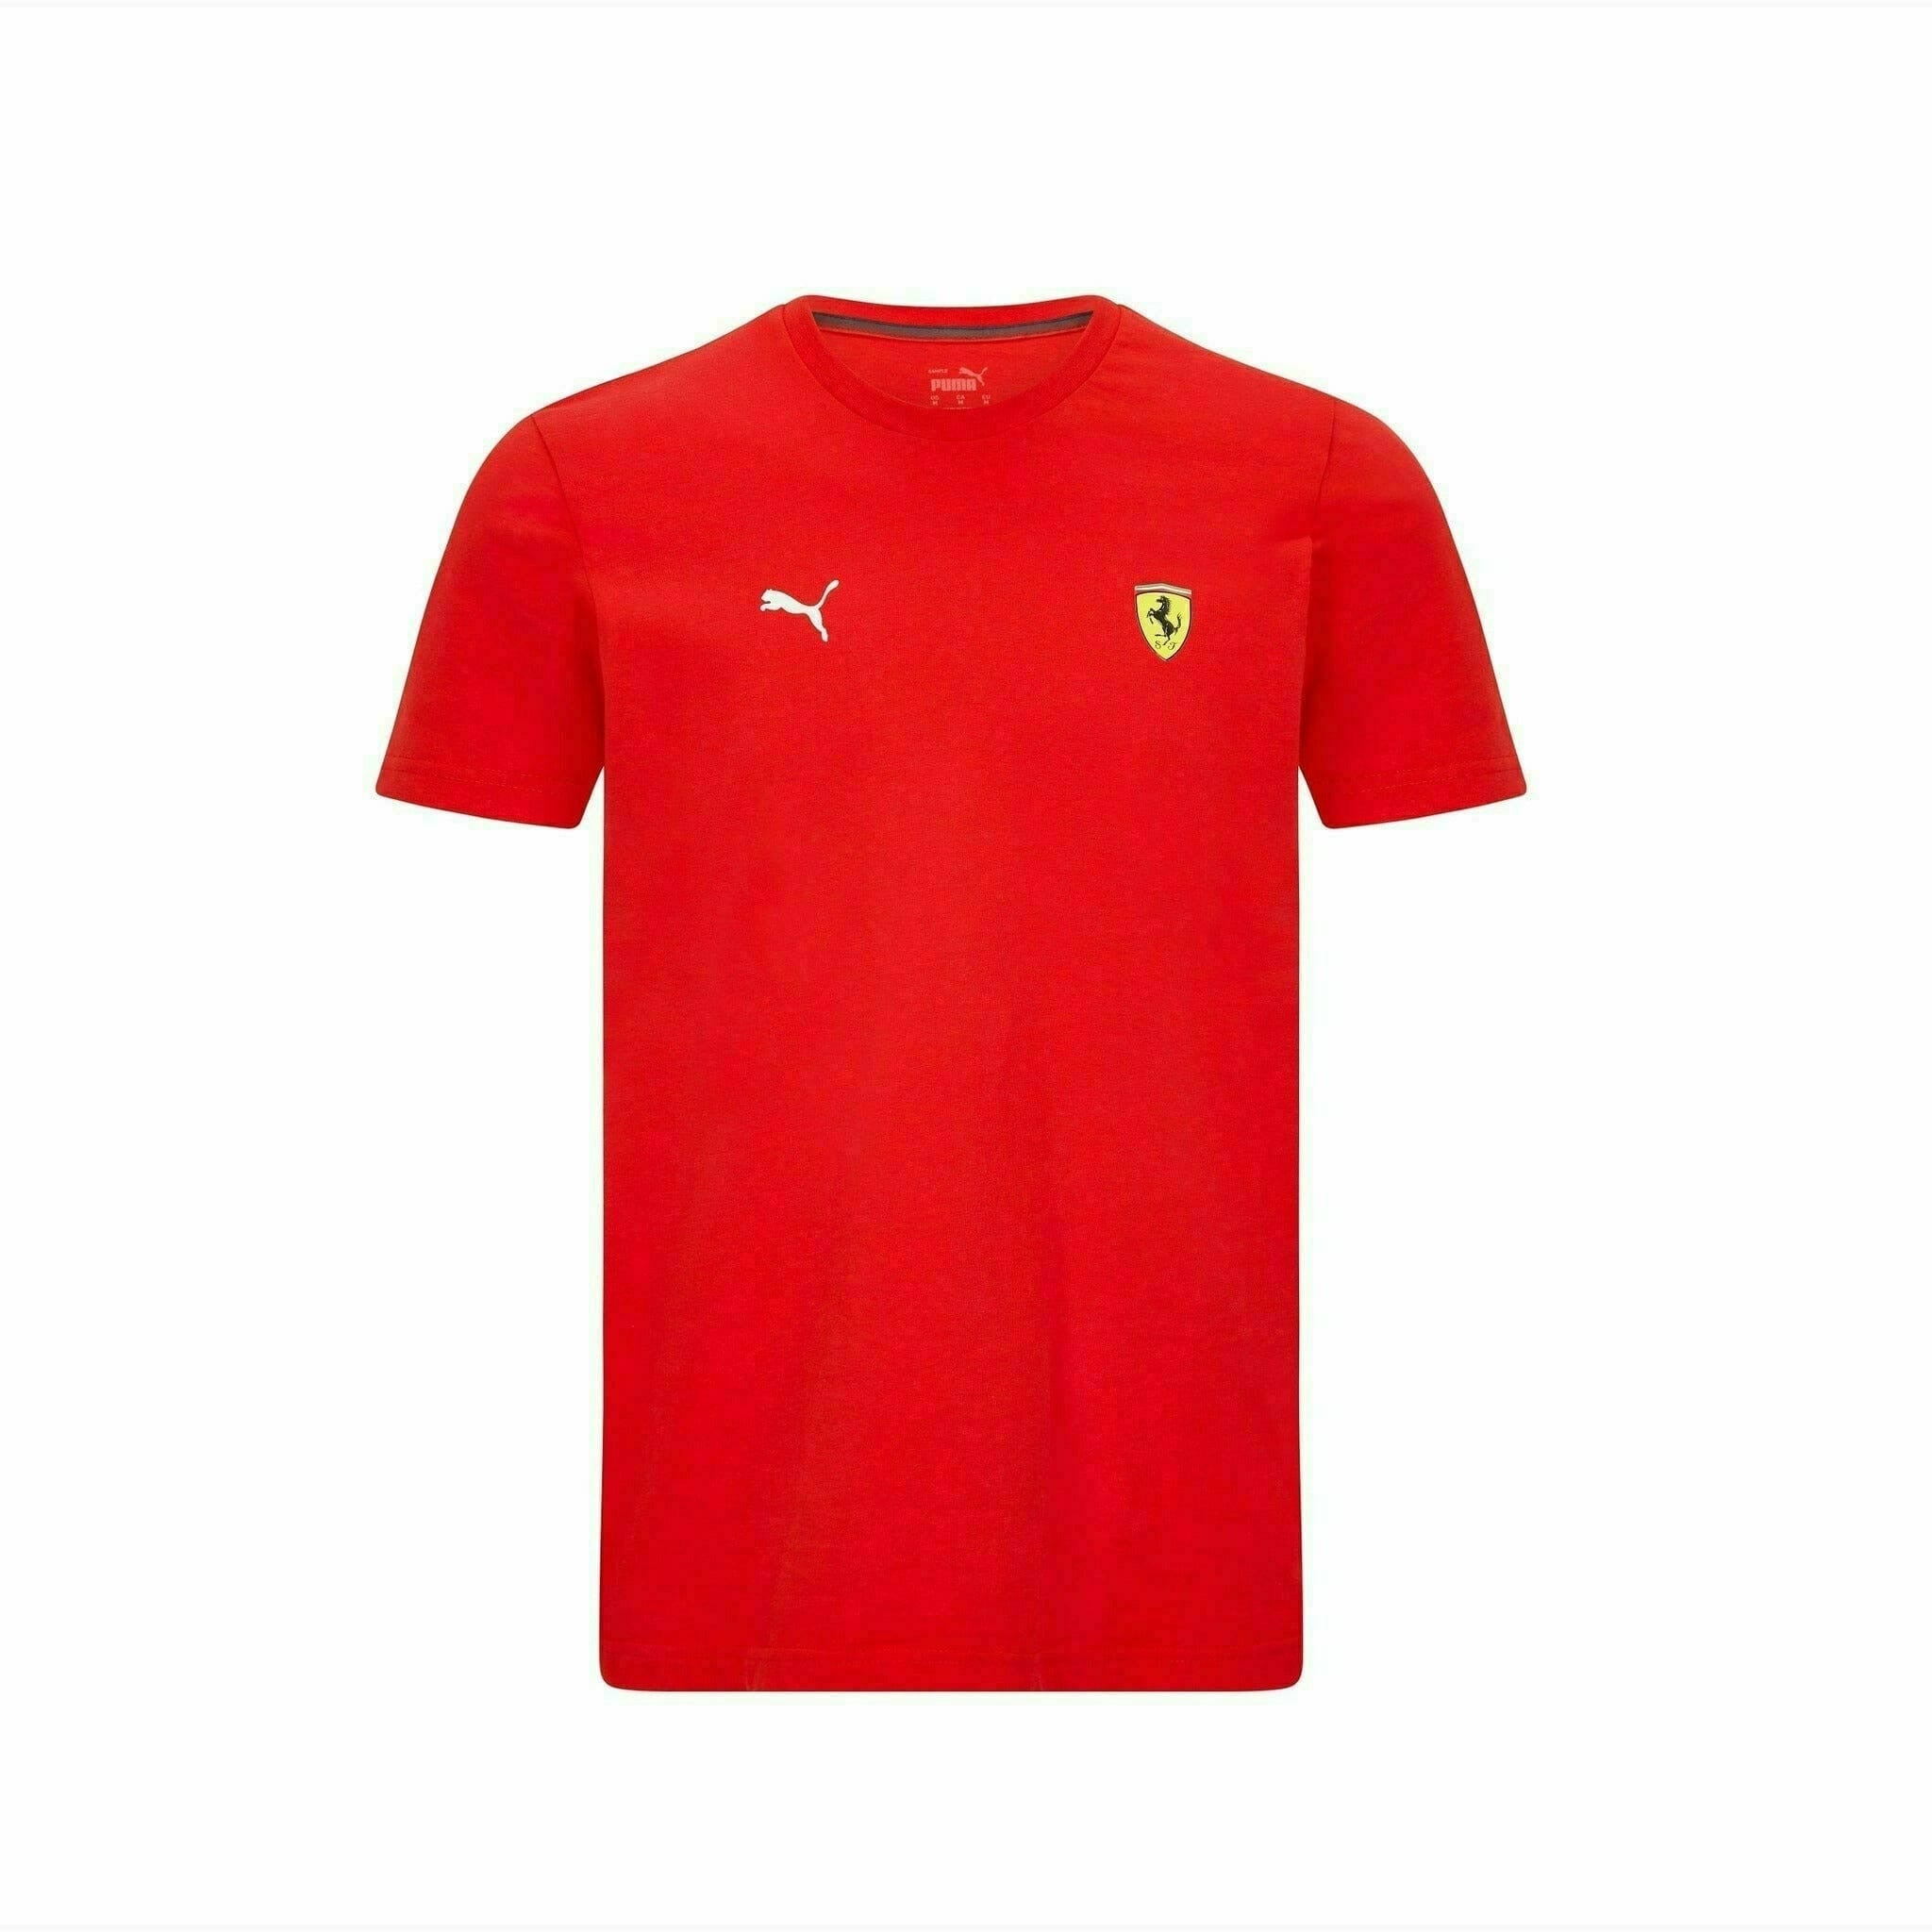 Camiseta Ferrari Fernando Alonso